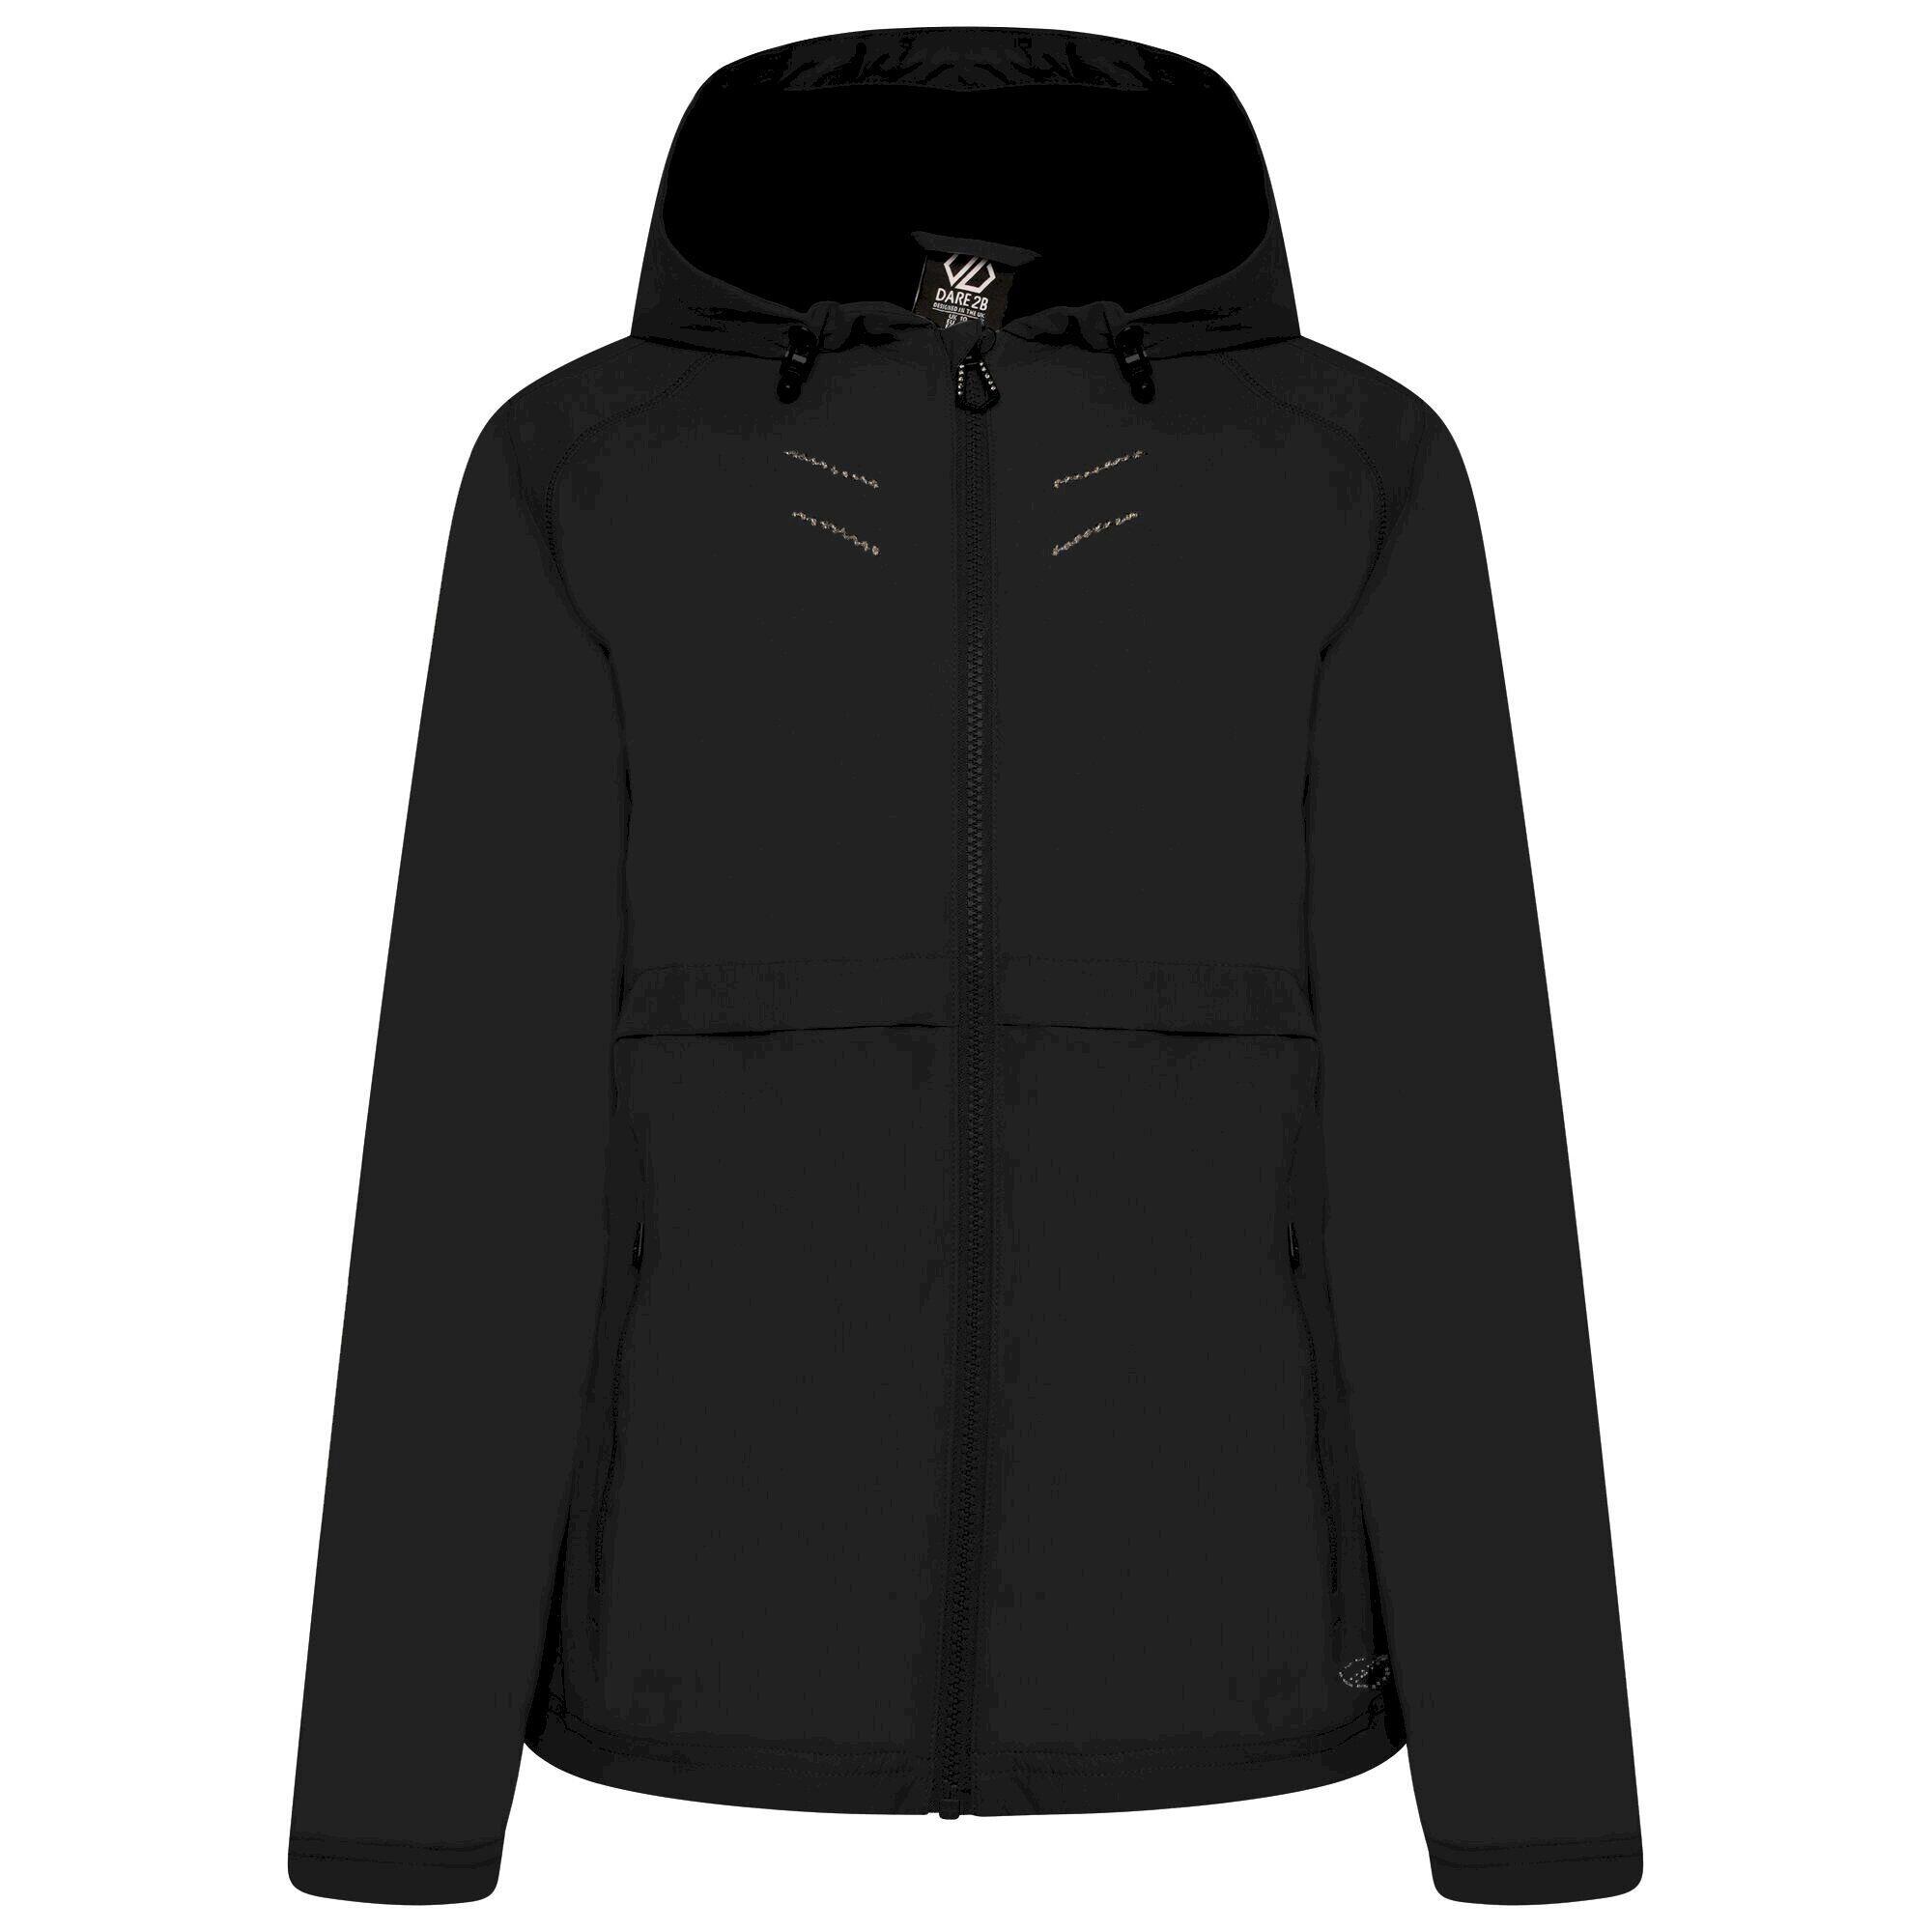 DARE 2B Womens/Ladies Crystallize Waterproof Jacket (Black)